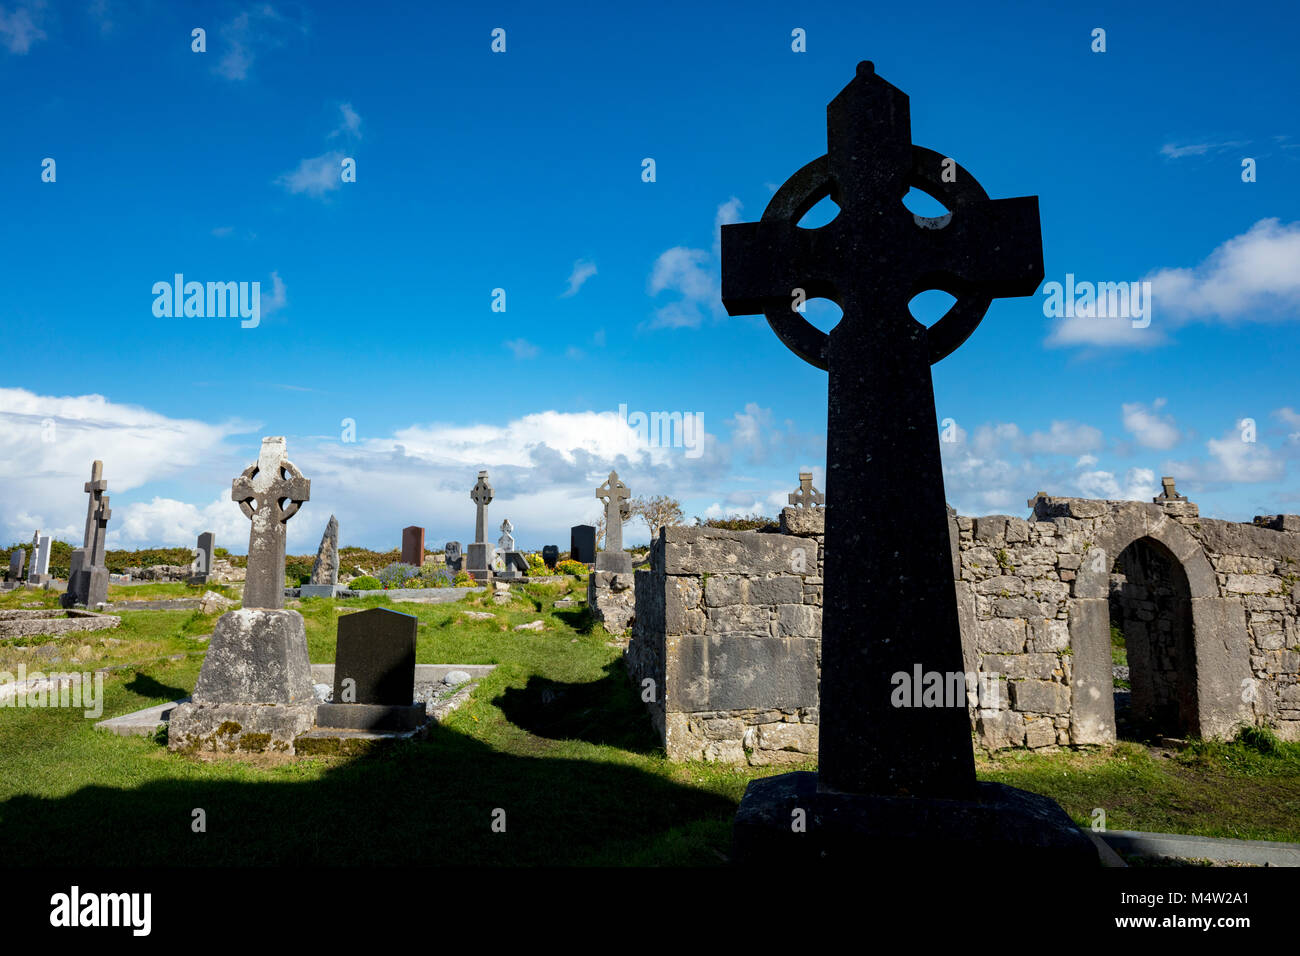 Croix Celtiques dans le cimetière des sept églises, l'Inishmore, Aran Islands, comté de Galway, Irlande. Banque D'Images